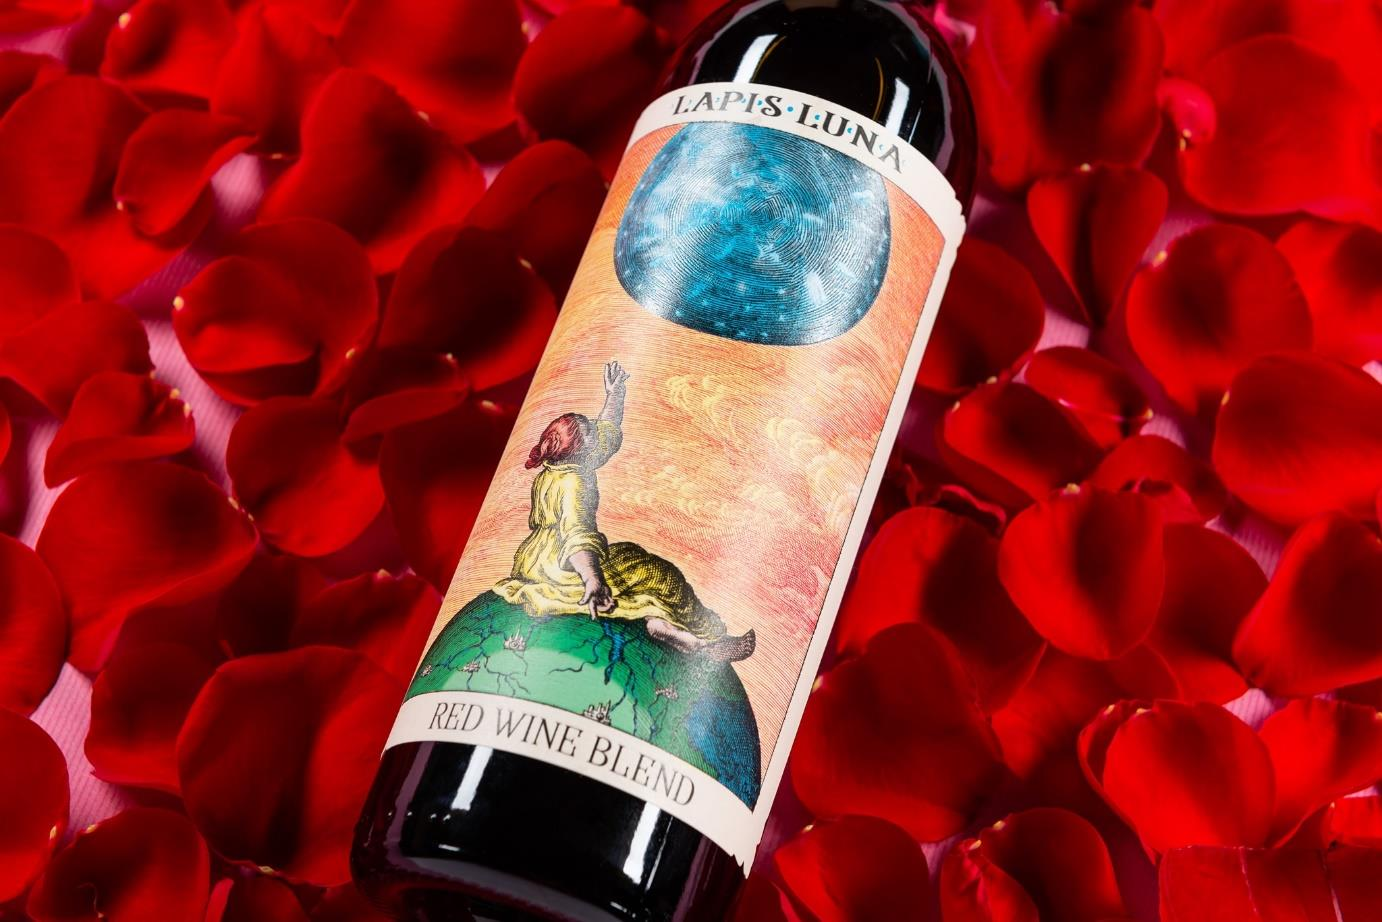 推荐望月酒庄混酿干红葡萄酒 2020 | Lapis Luna Red Blend 2020 (North Coast, CA)商品